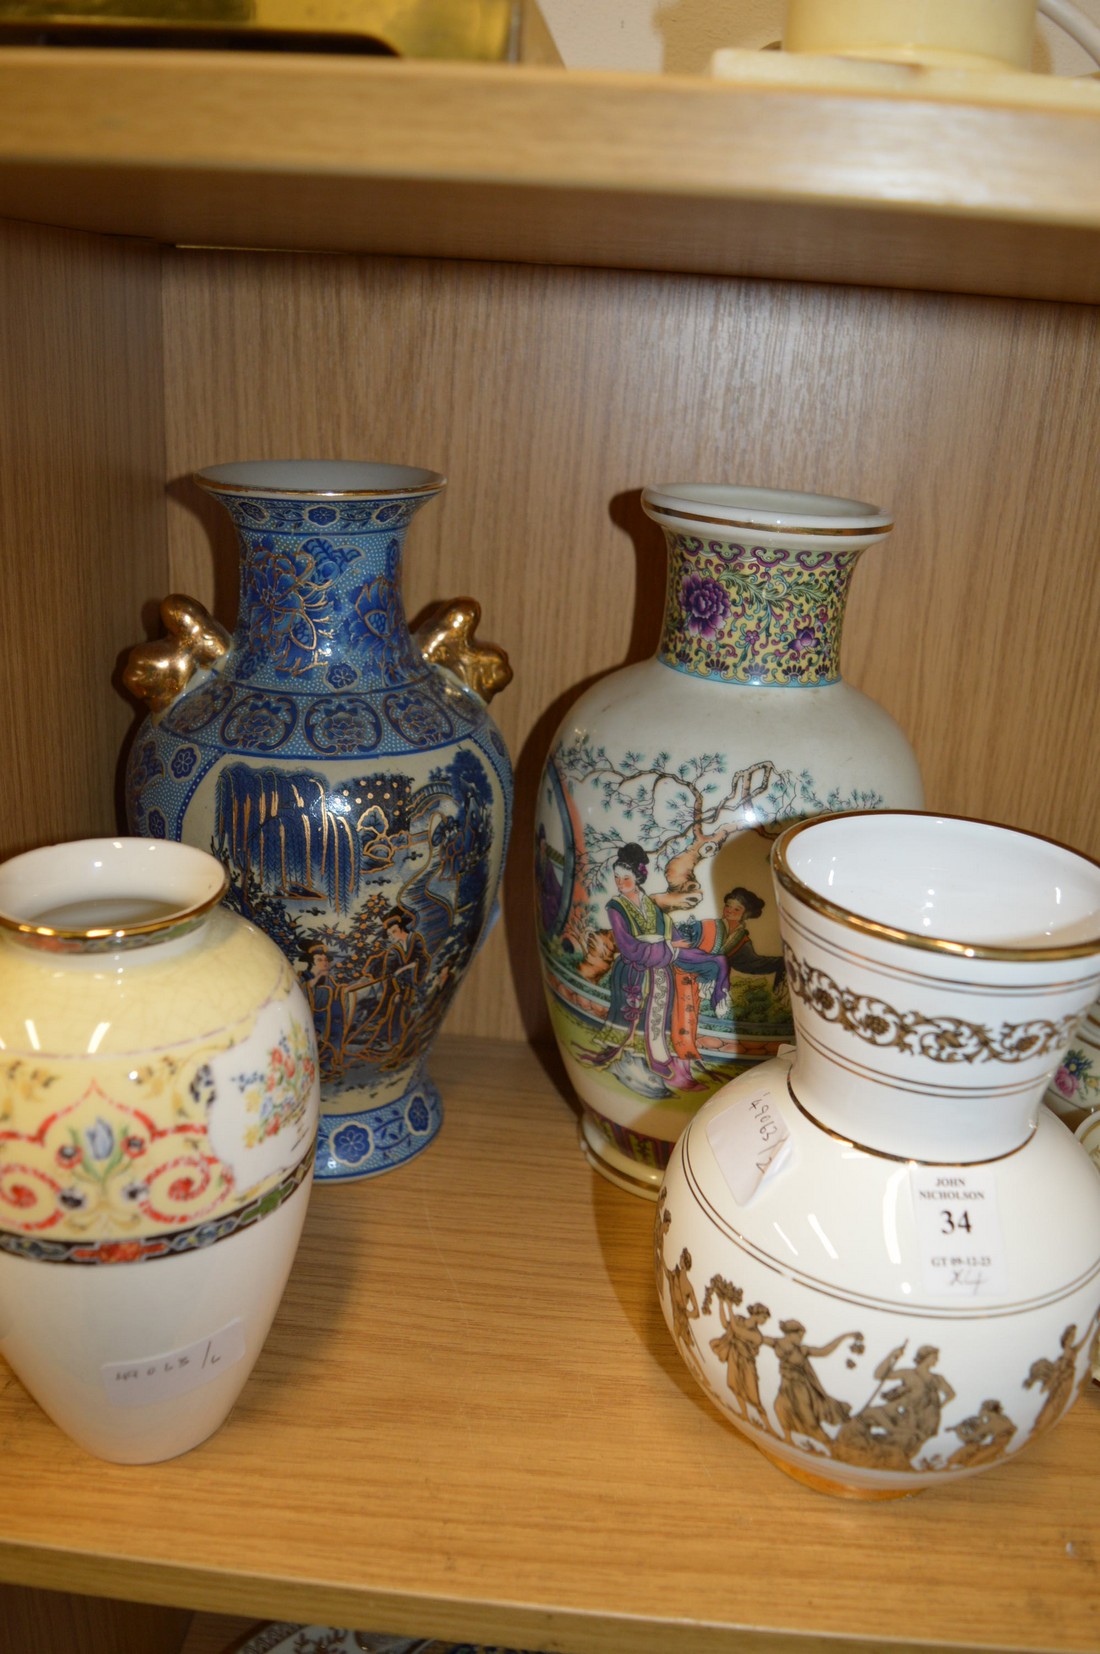 Four decorative vases.